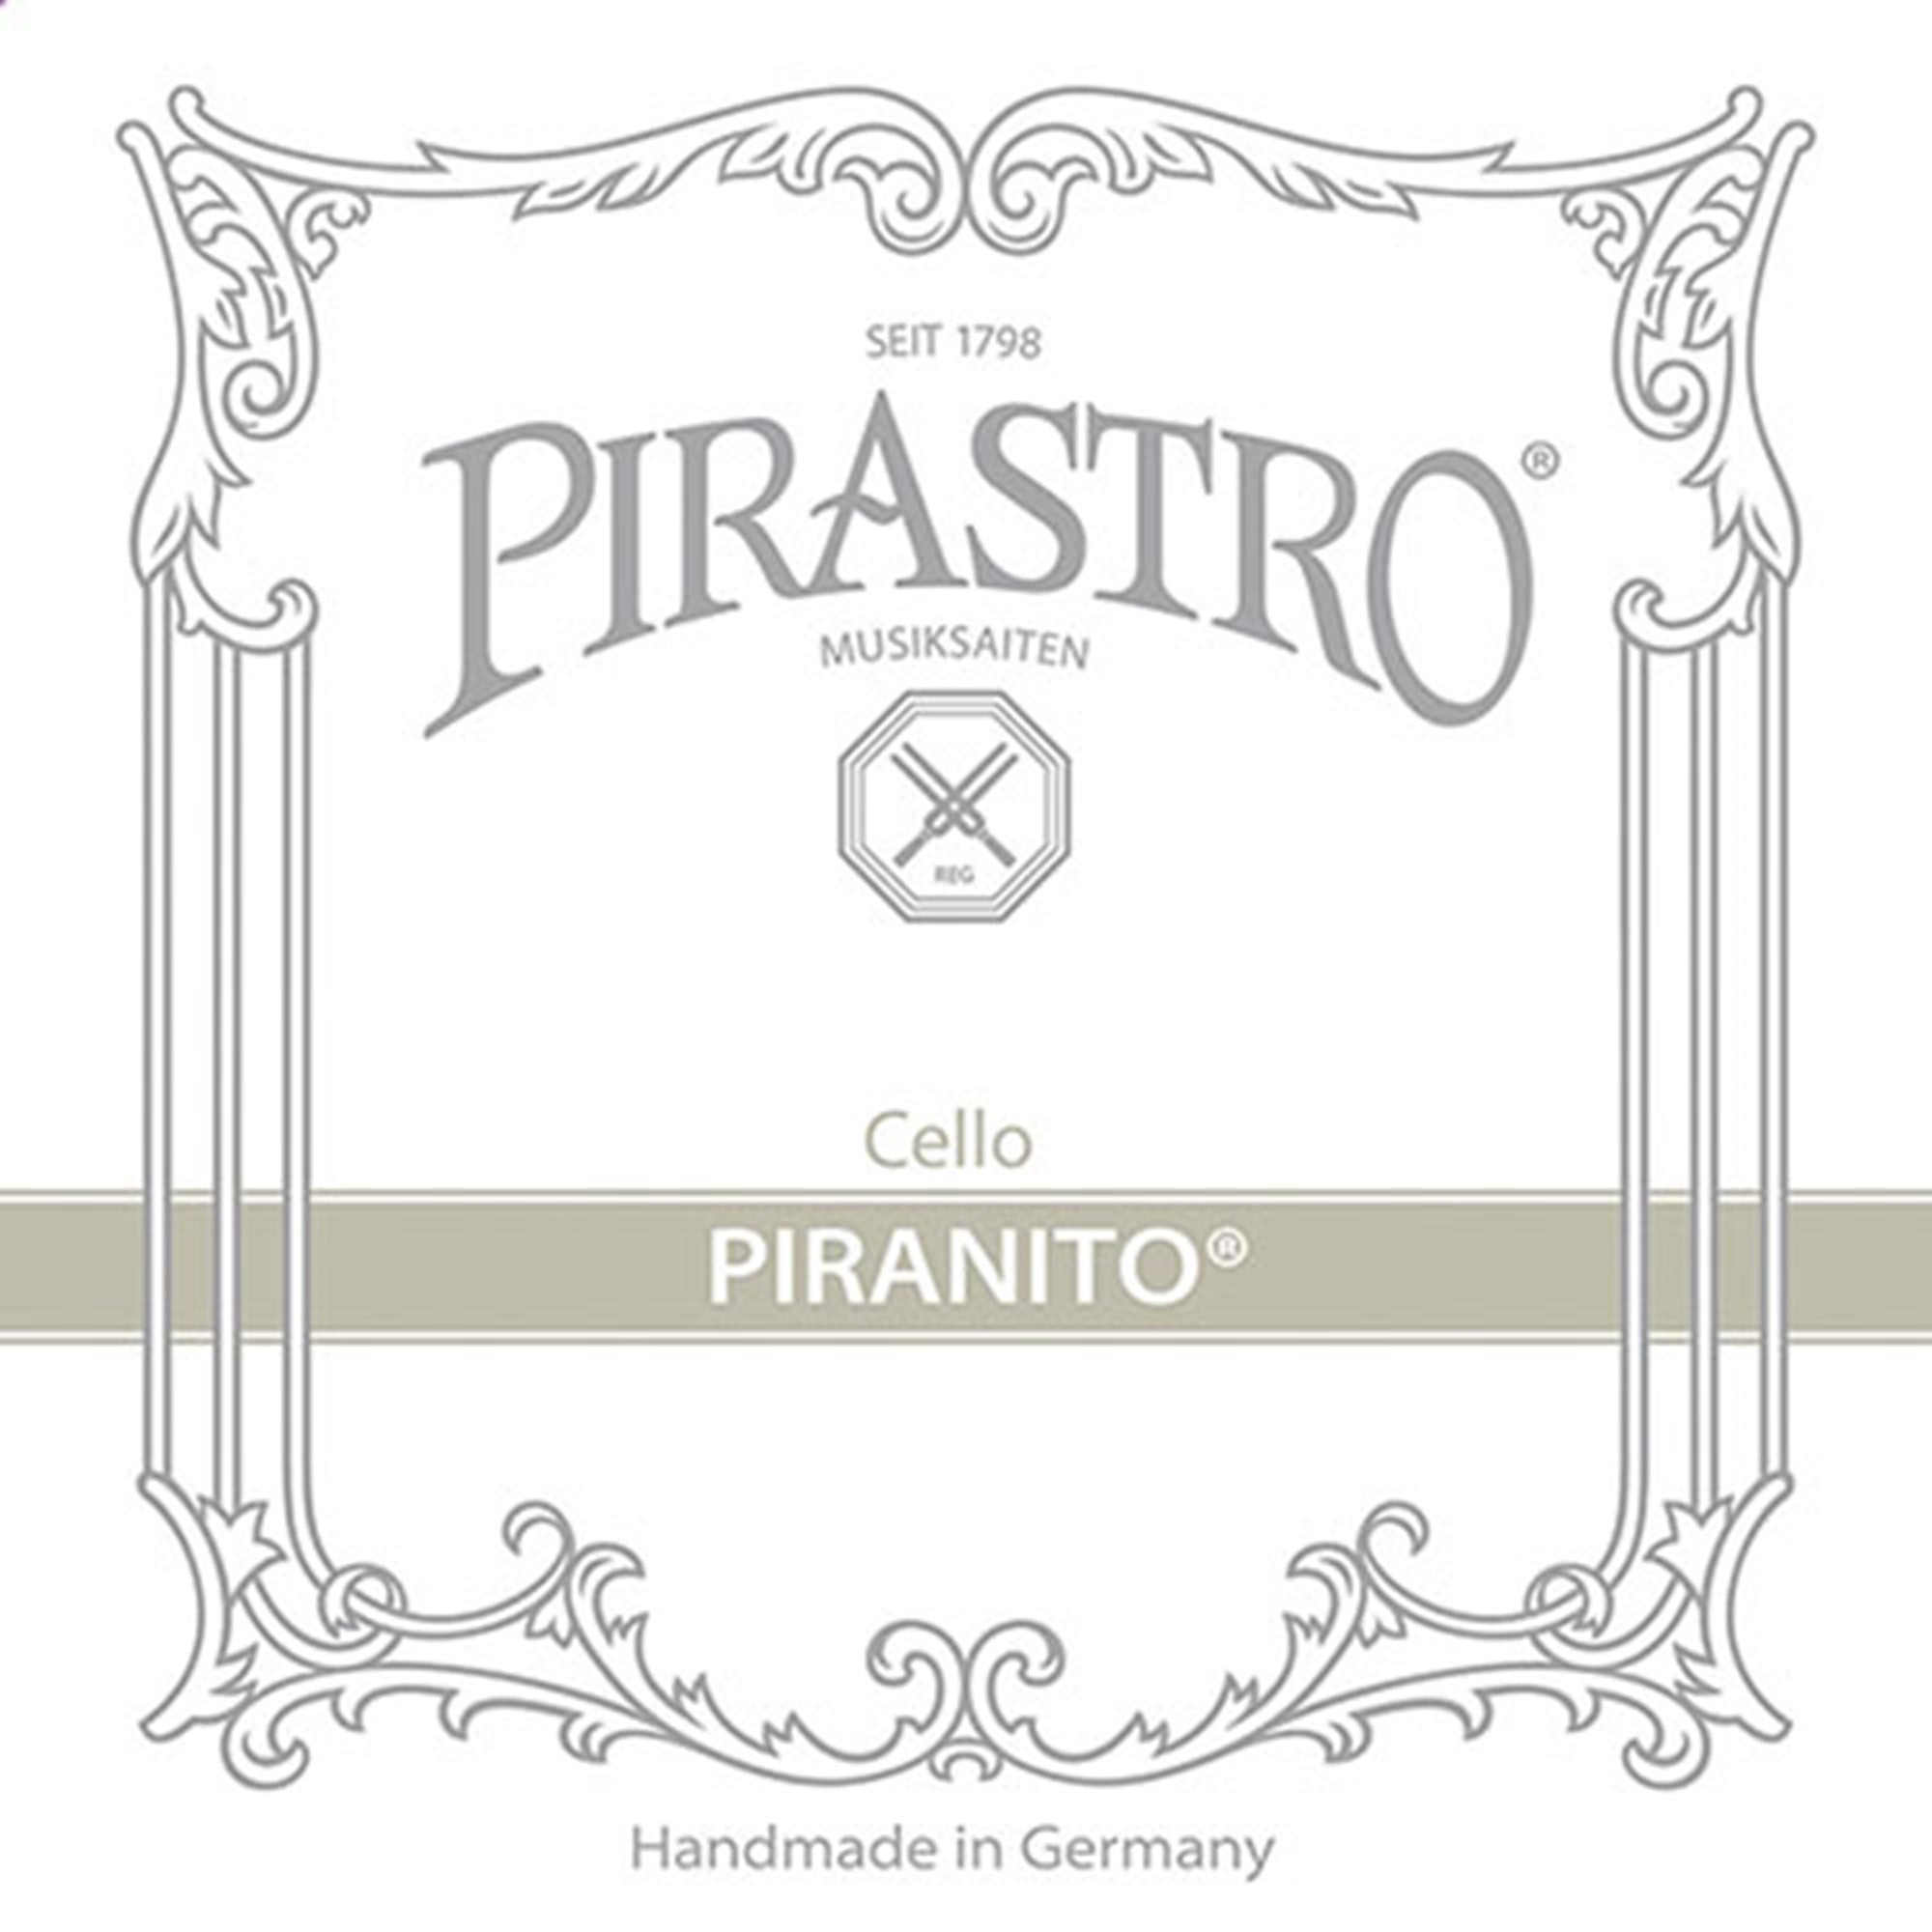 Pirastro Piranito Cello G String